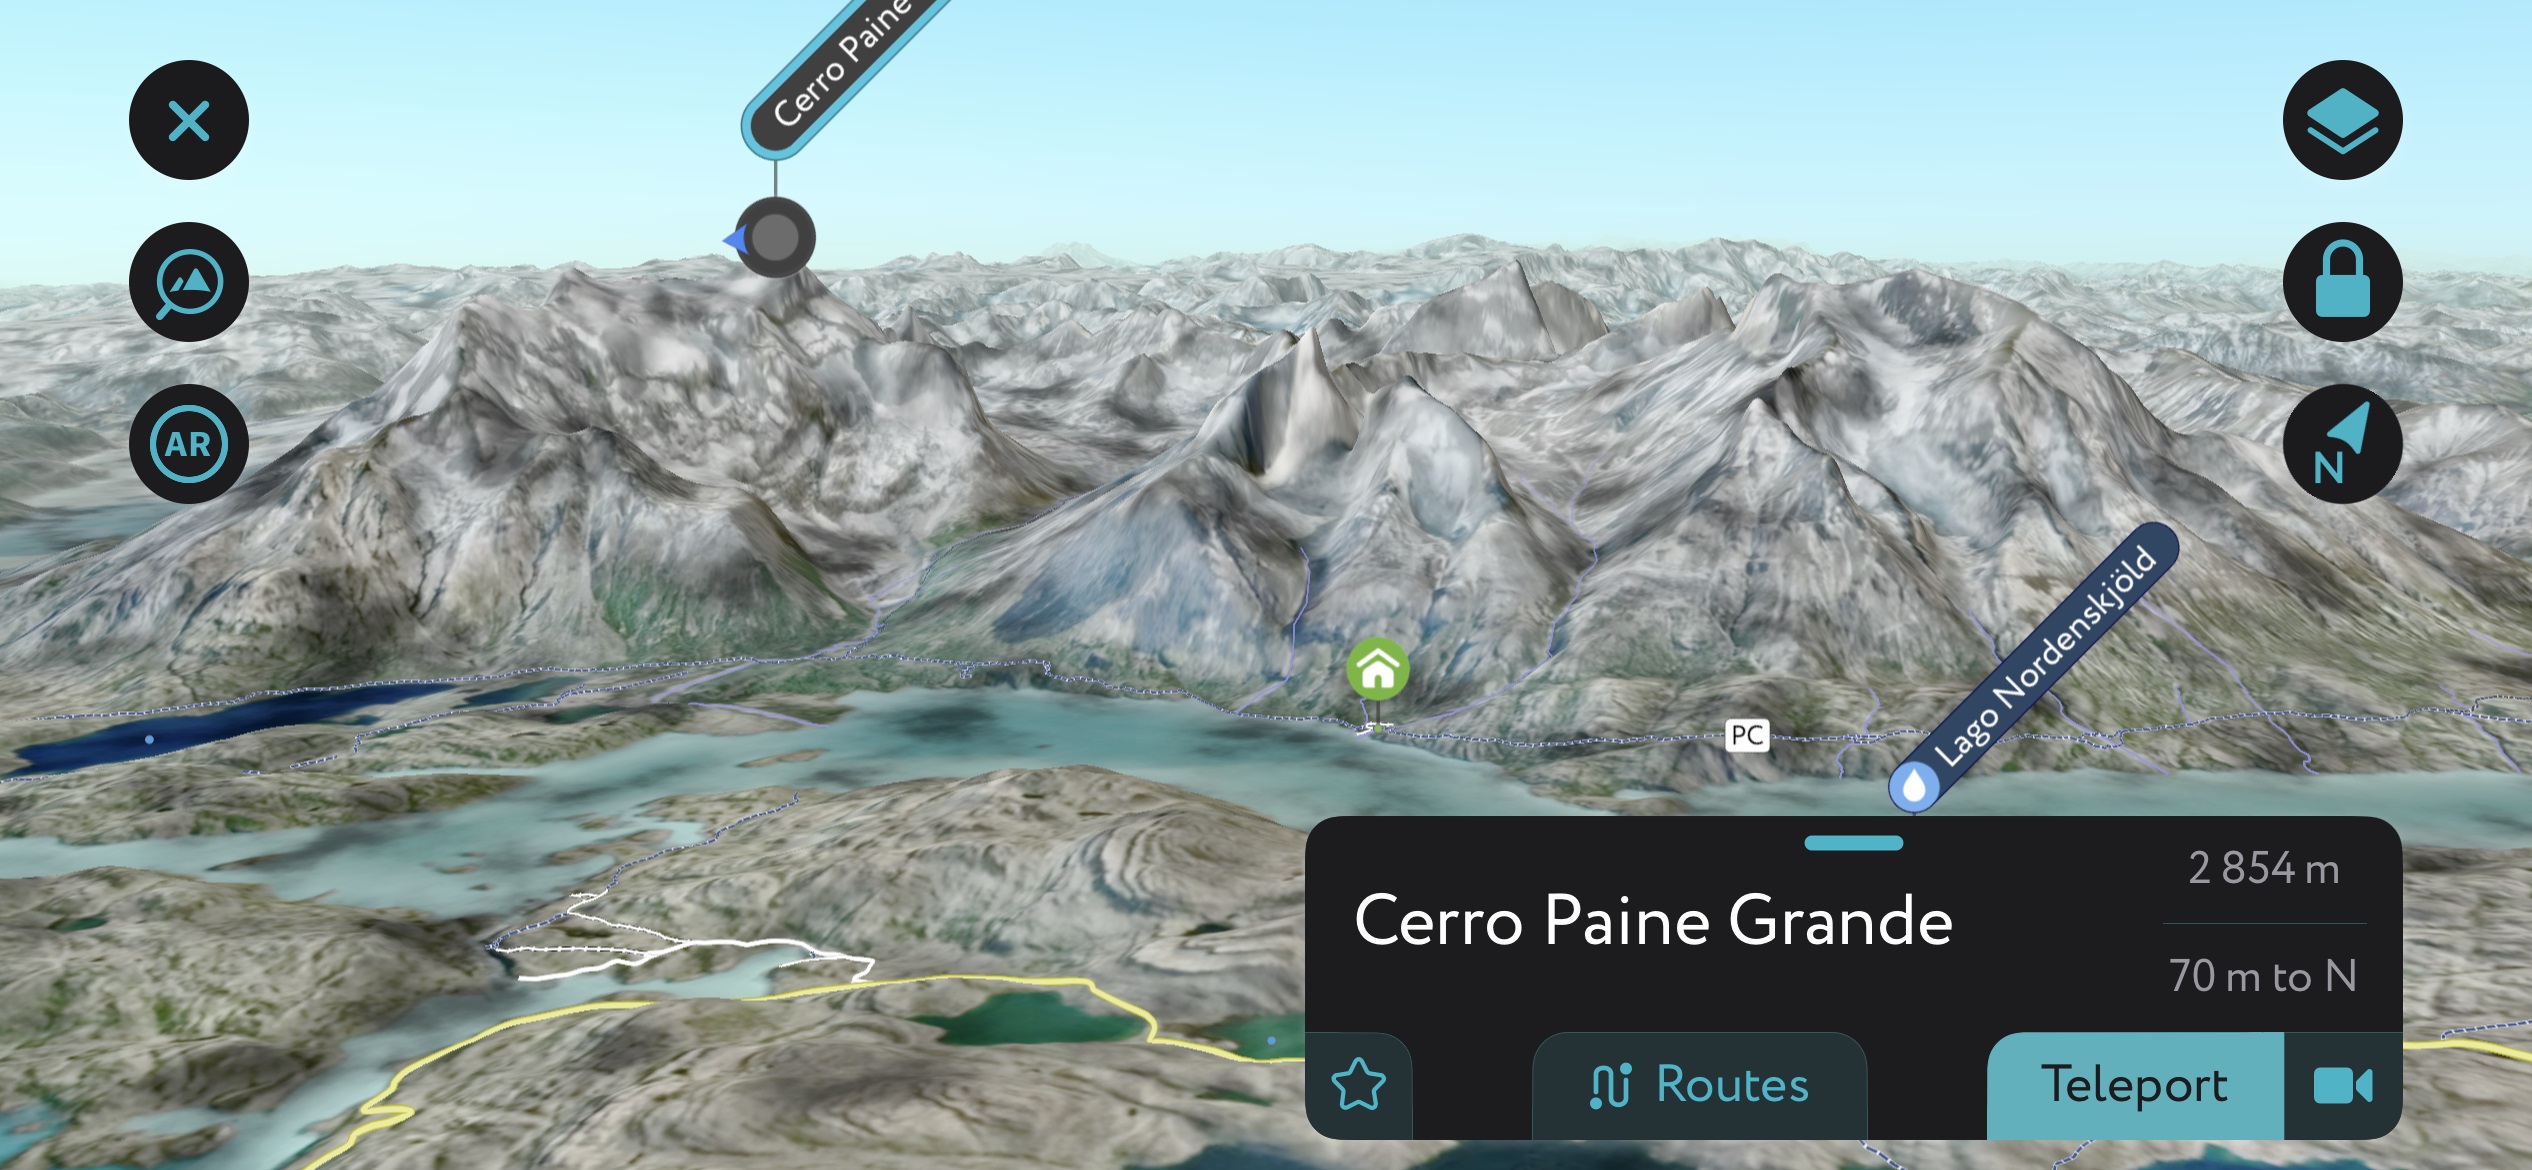 Najlepsze wędrówki. Generowanie Torres del Paine NP przy użyciu aplikacji mobilnej PeakVisor